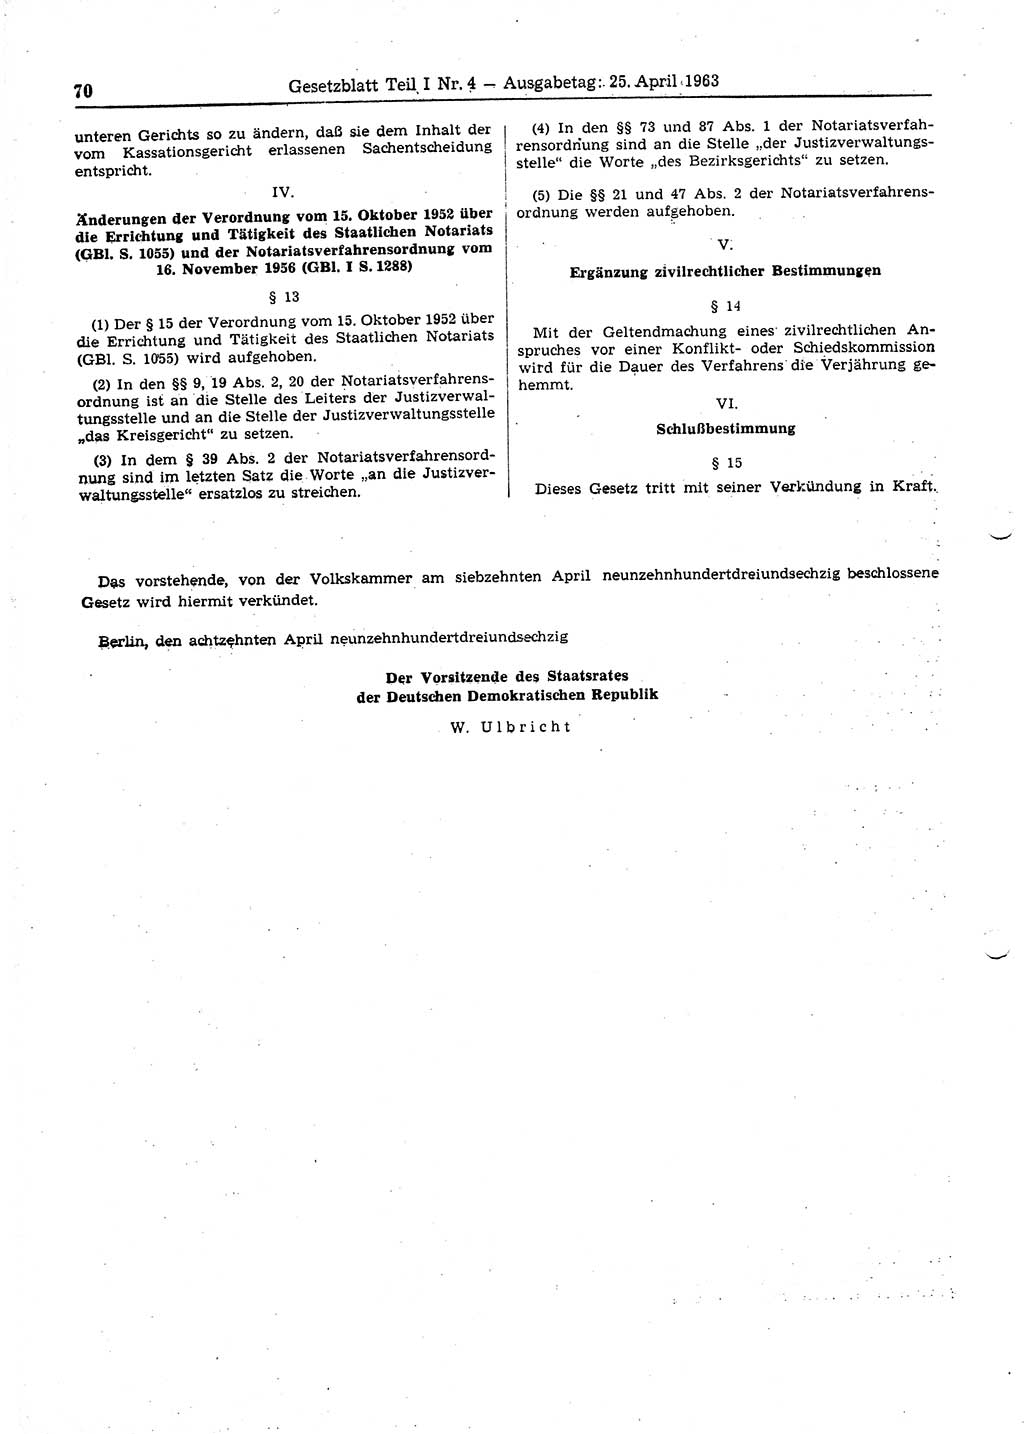 Gesetzblatt (GBl.) der Deutschen Demokratischen Republik (DDR) Teil Ⅰ 1963, Seite 70 (GBl. DDR Ⅰ 1963, S. 70)